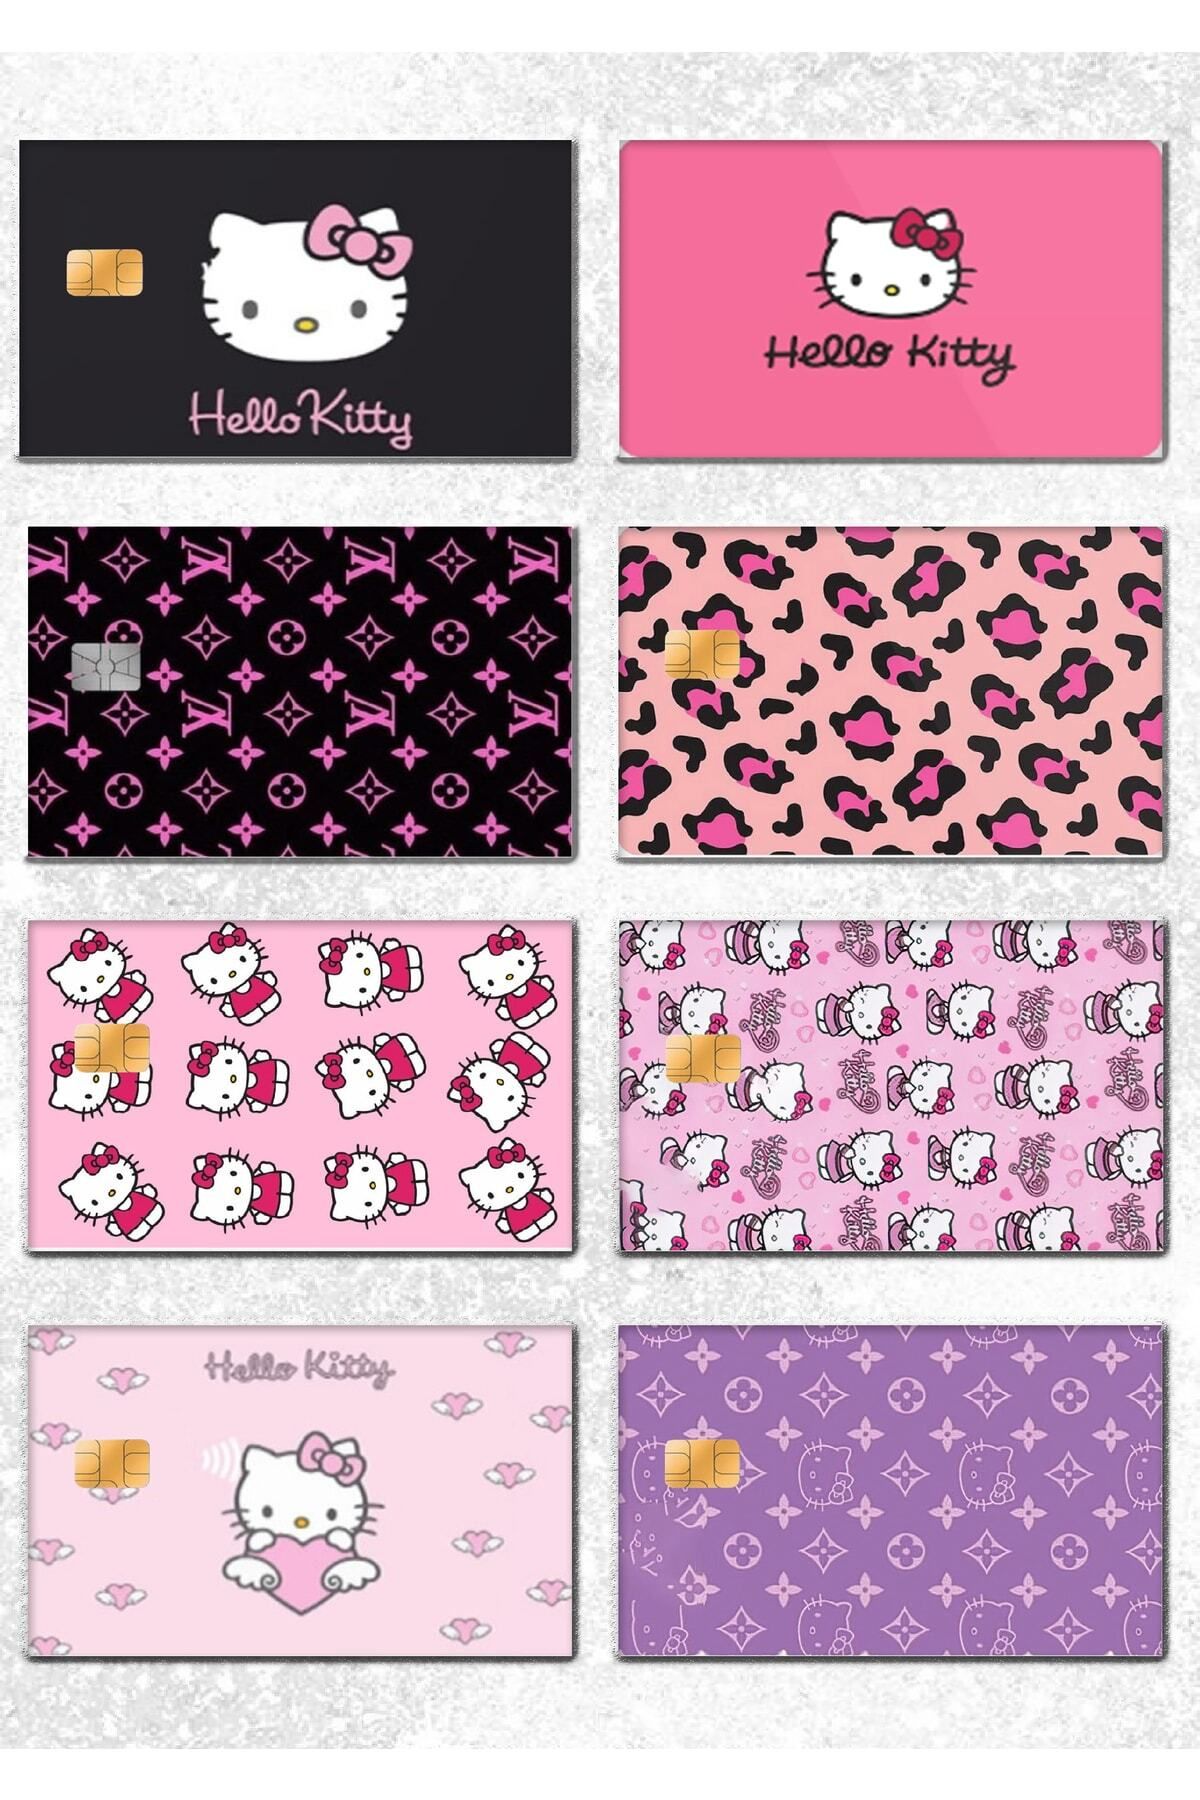 ESİLA 14 Adet Hello Kitty Vl Kart Kaplama Sticker - Banka&kredi&papara&tosla Ve Ulaşım Kartı Etiketi